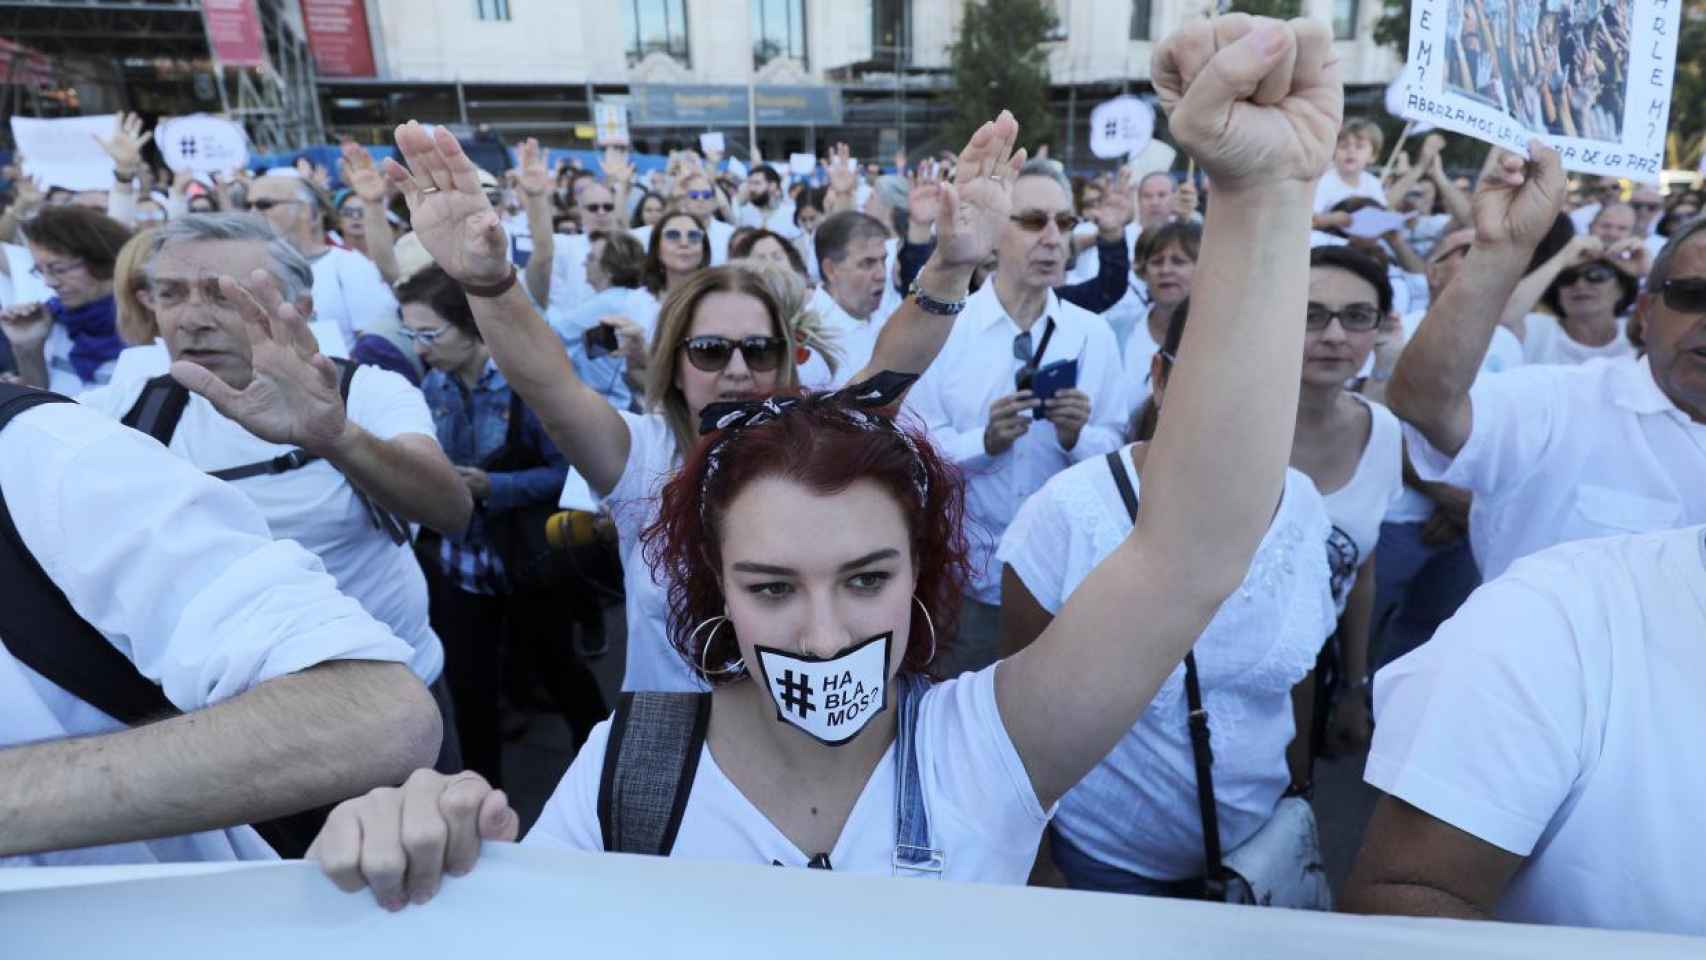 La manifestación convocada por 'Hablamos' el pasado 7 de octubre, en Madrid